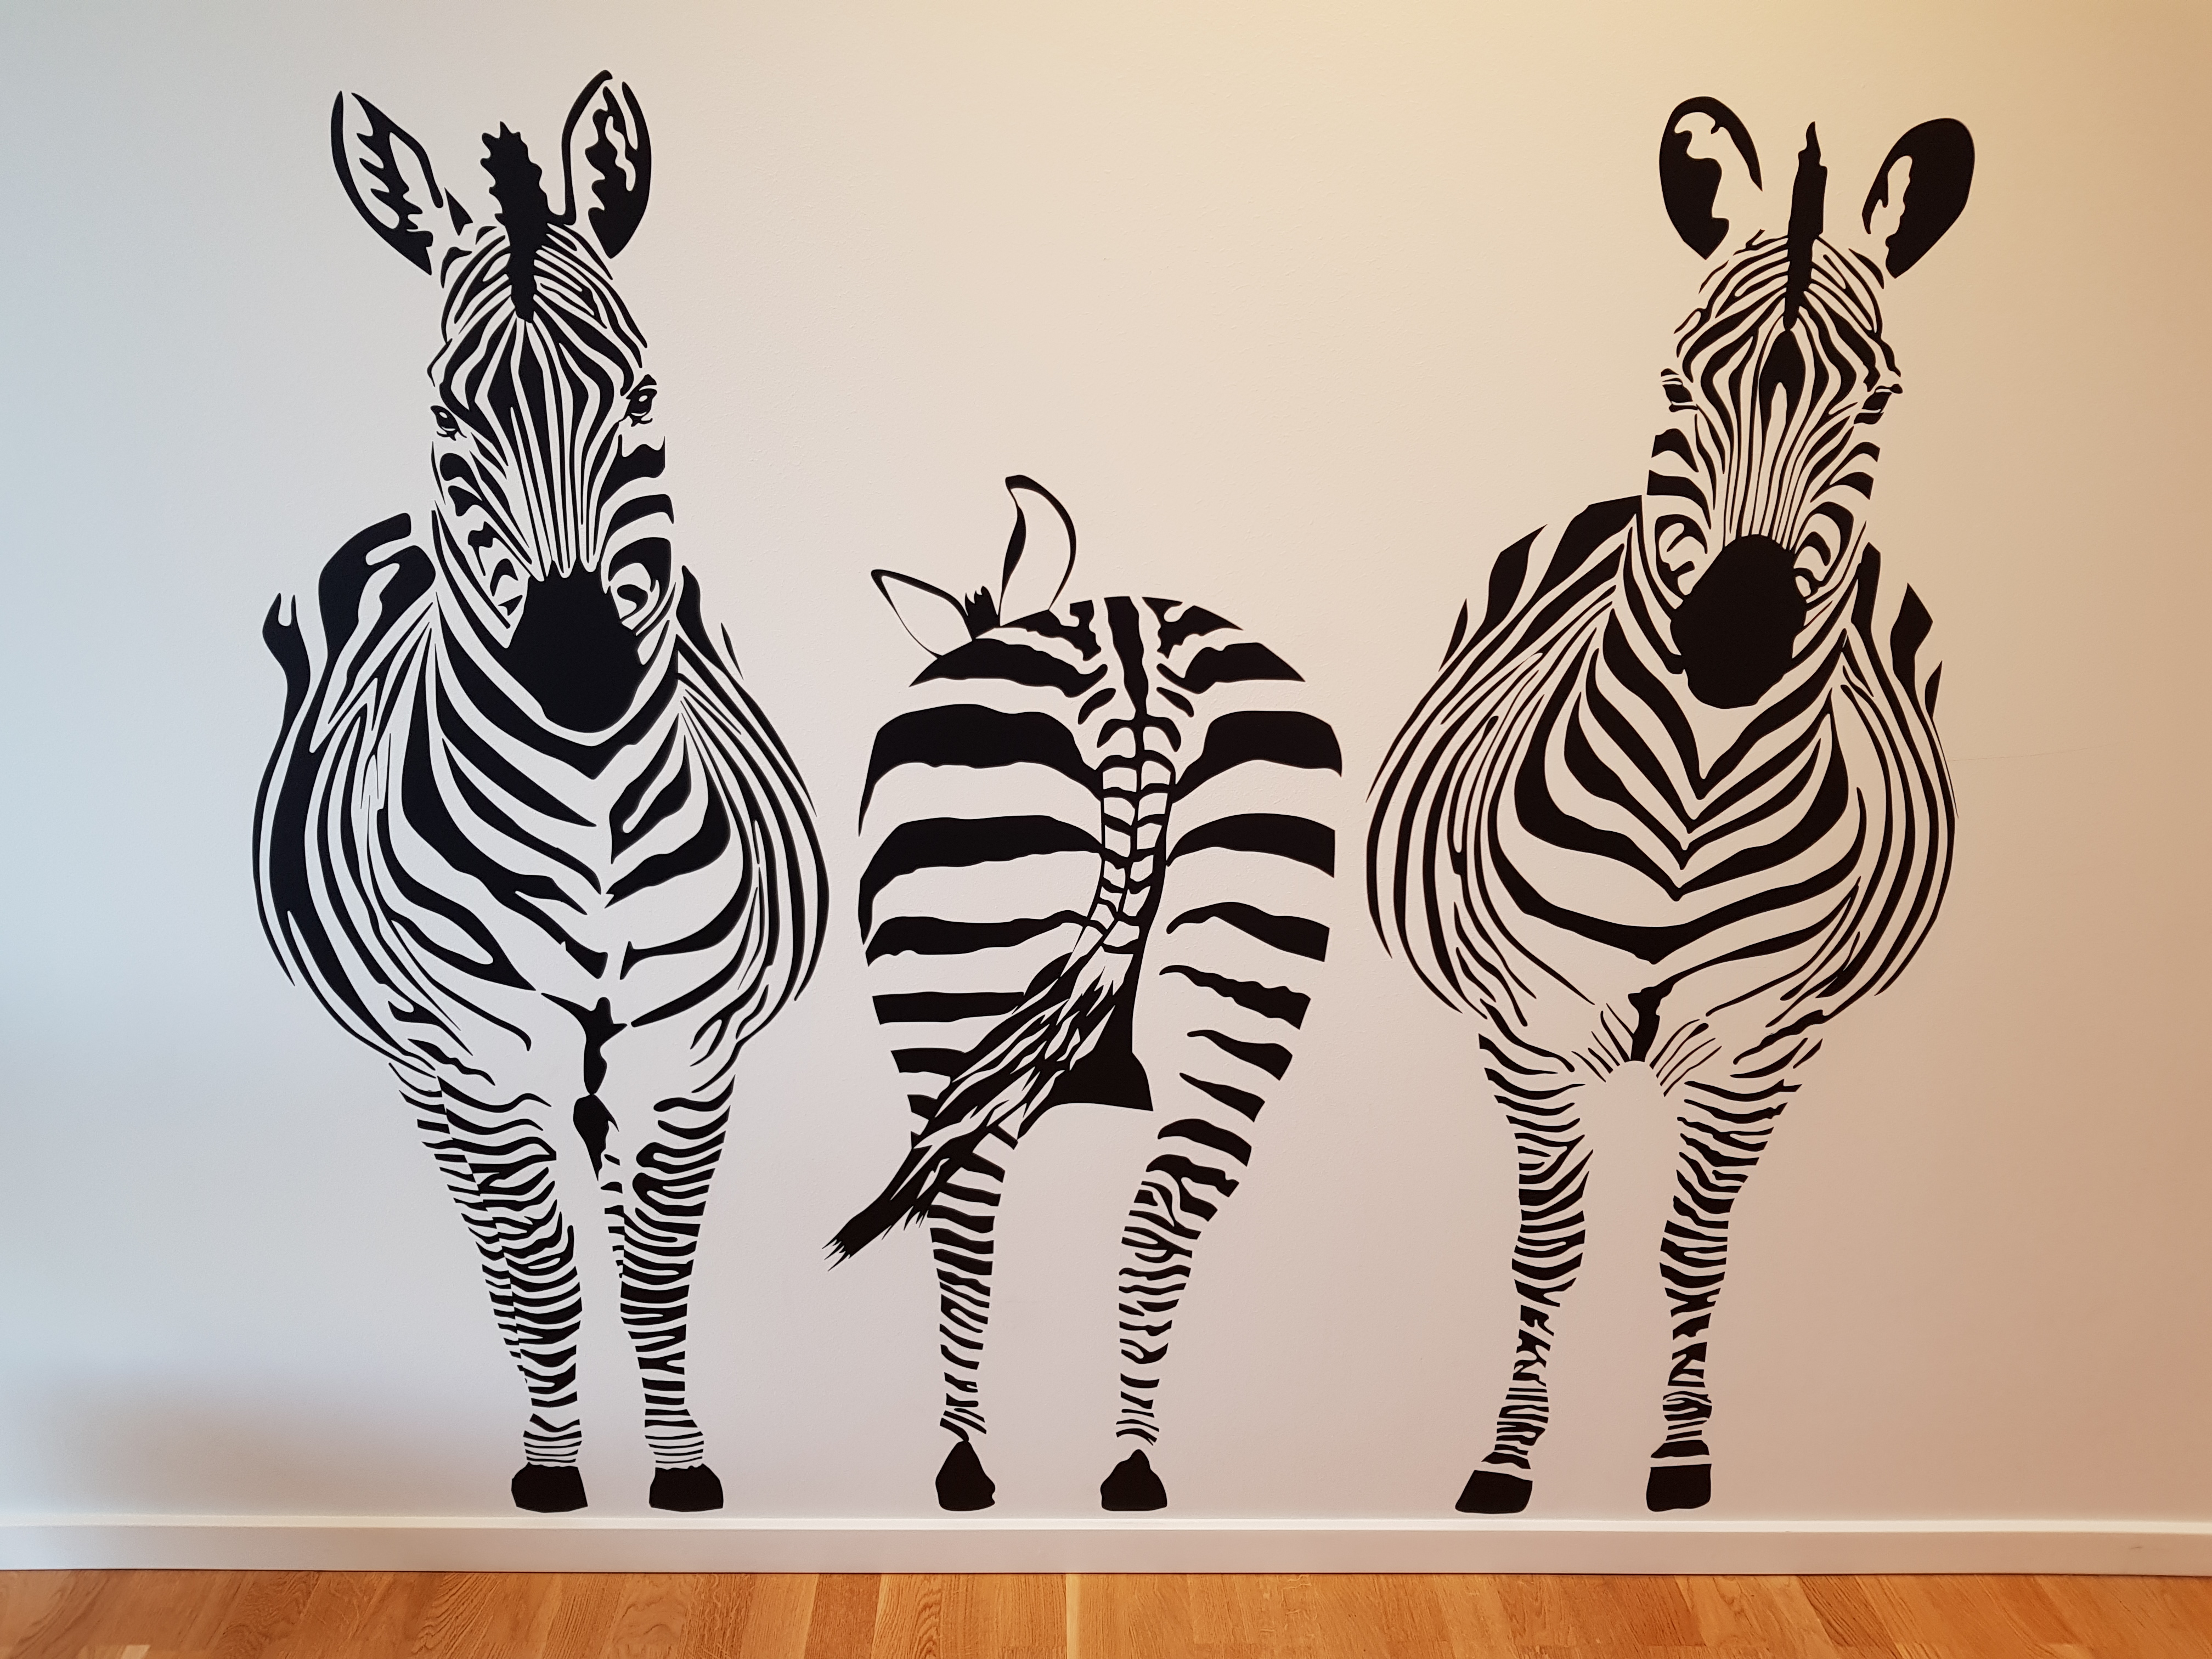 Dekorativt foto af zebraer